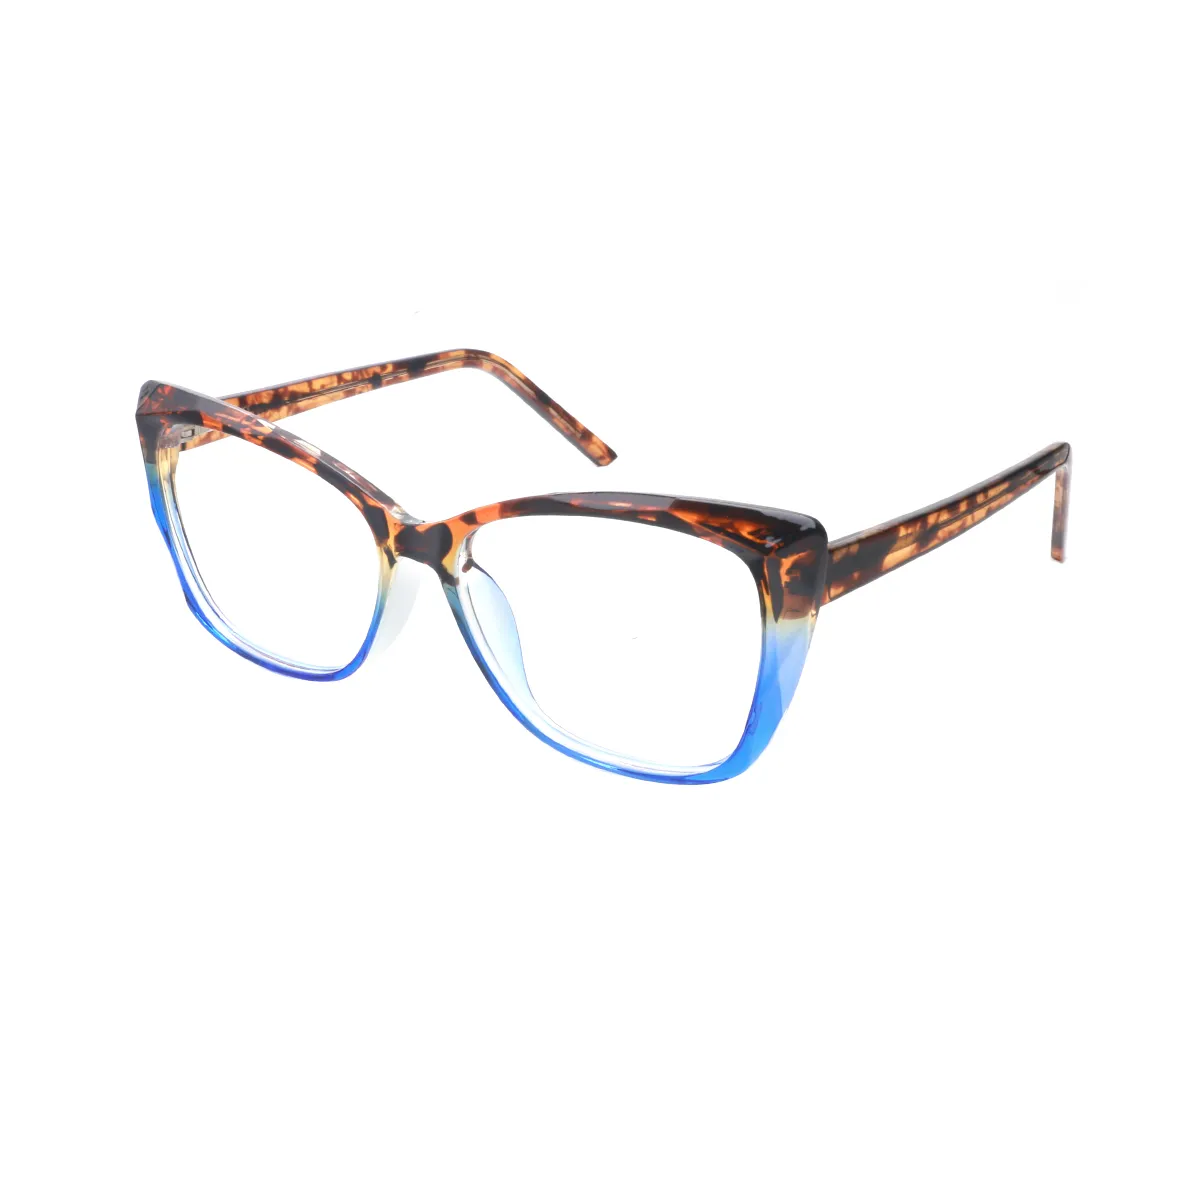 Classic Cat-eye Tortoiseshell Glasses for Women